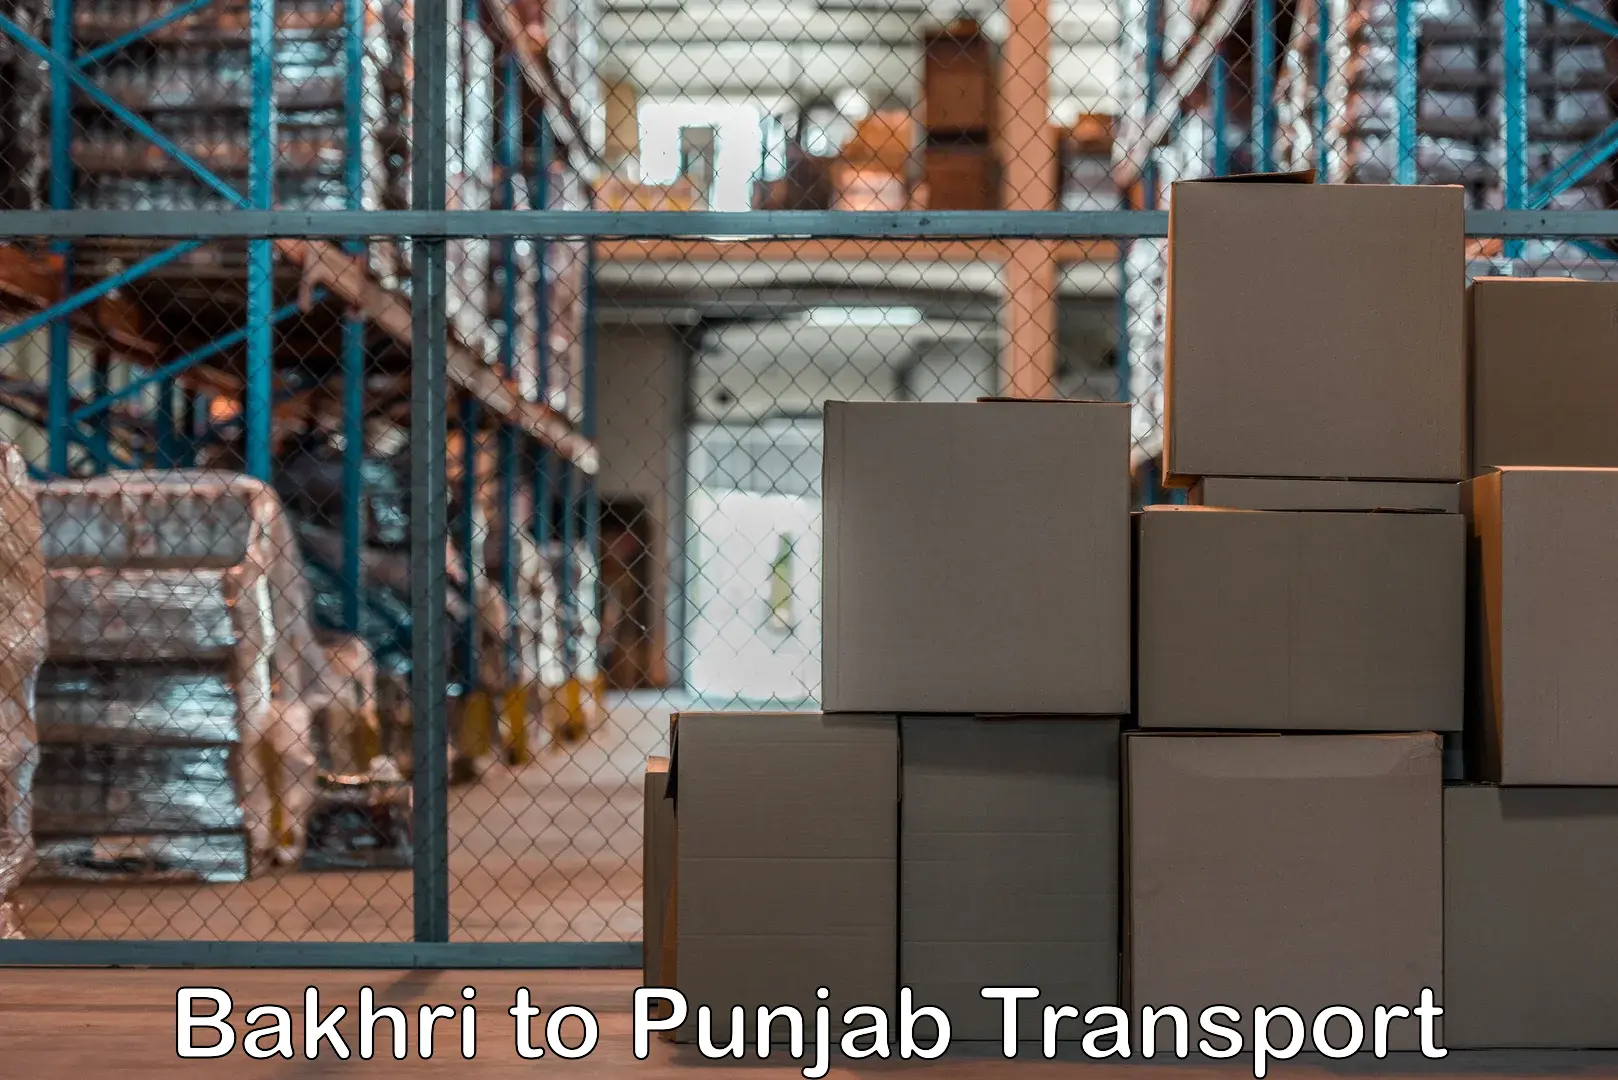 Shipping services in Bakhri to Kotkapura